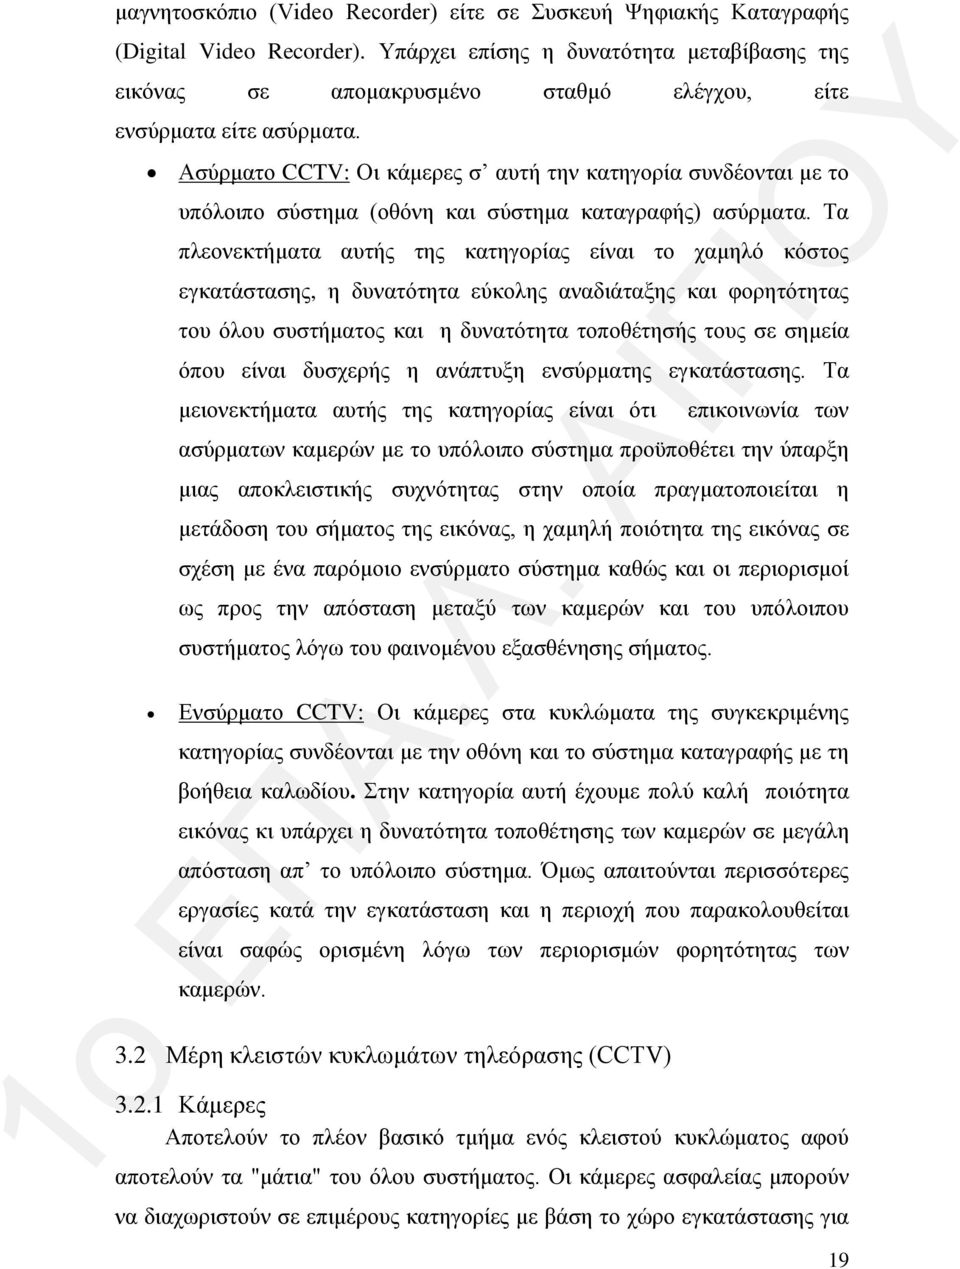 Ασύρματο CCTV: Οι κάμερες σ αυτή την κατηγορία συνδέονται με το υπόλοιπο σύστημα (οθόνη και σύστημα καταγραφής) ασύρματα.